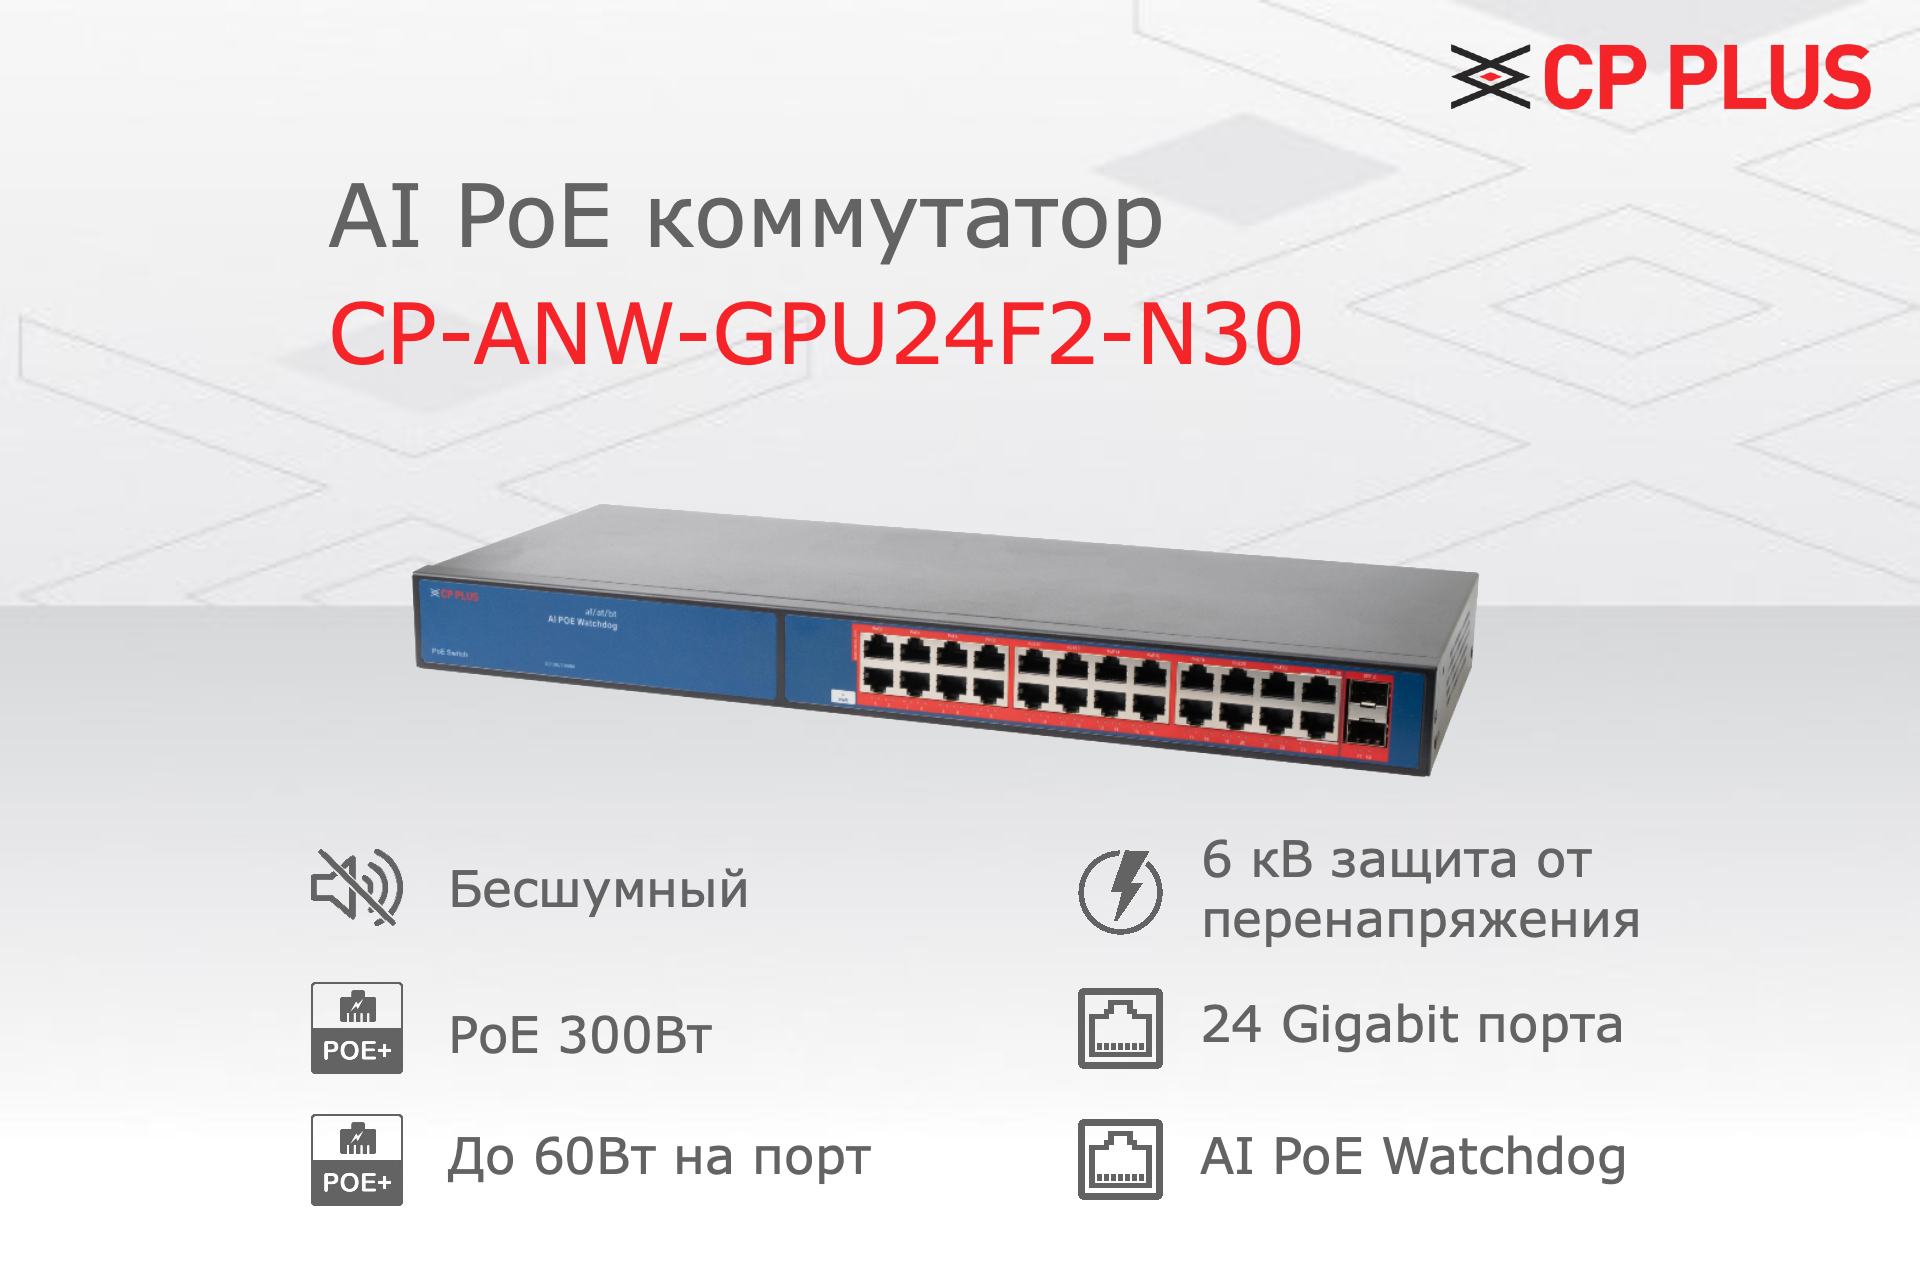 Коммутатор гигабитный 24 порта CP PLUS CP-ANW-GPU24F2-N30, AI Watchdog и PoE 300W